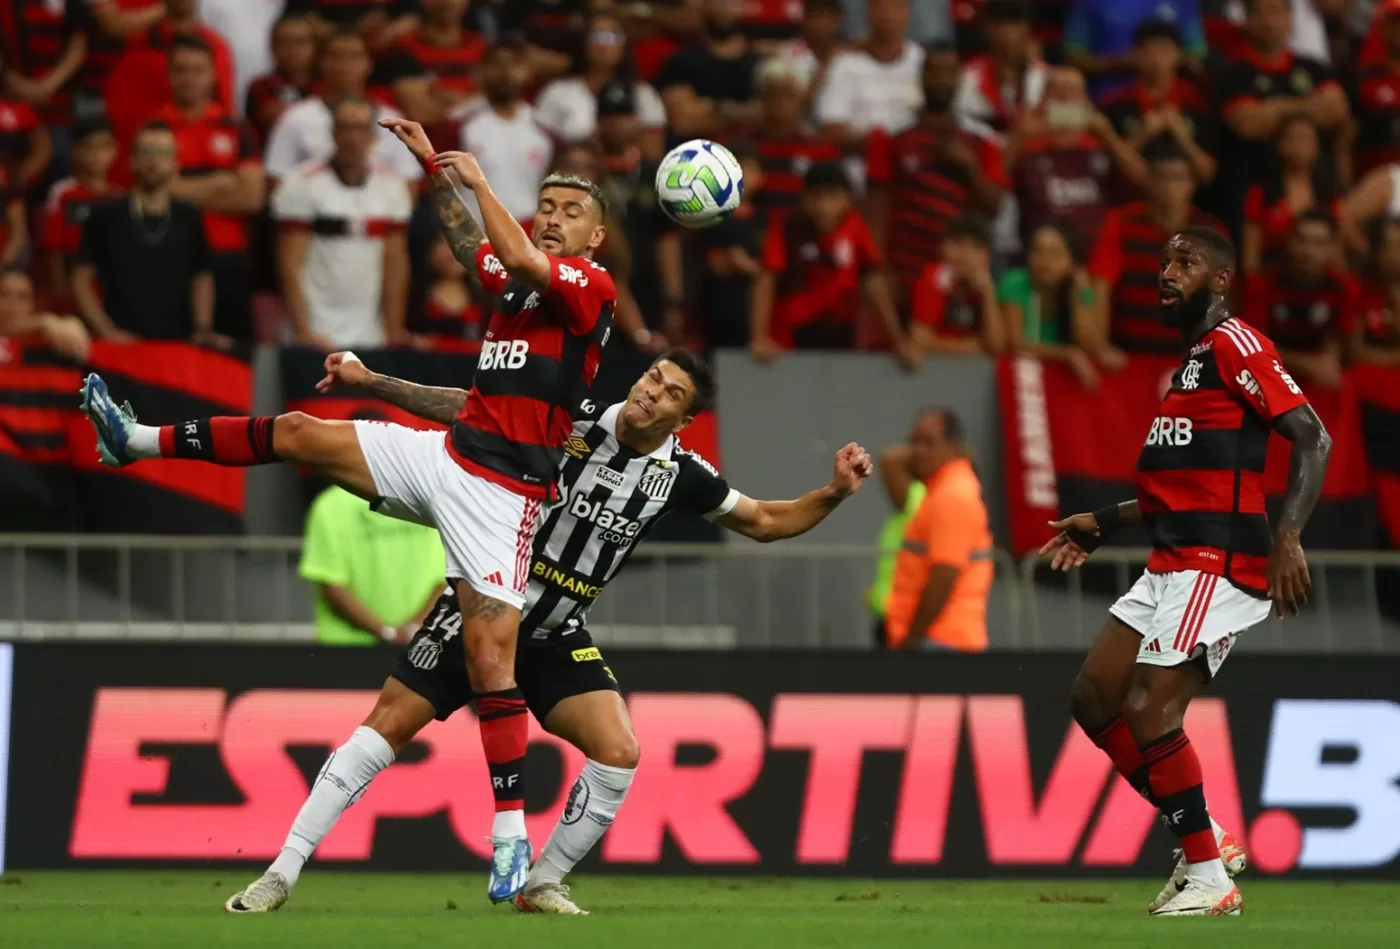 Santos 1x2 Flamengo: como foi o jogo da 15º rodada do Brasileirão